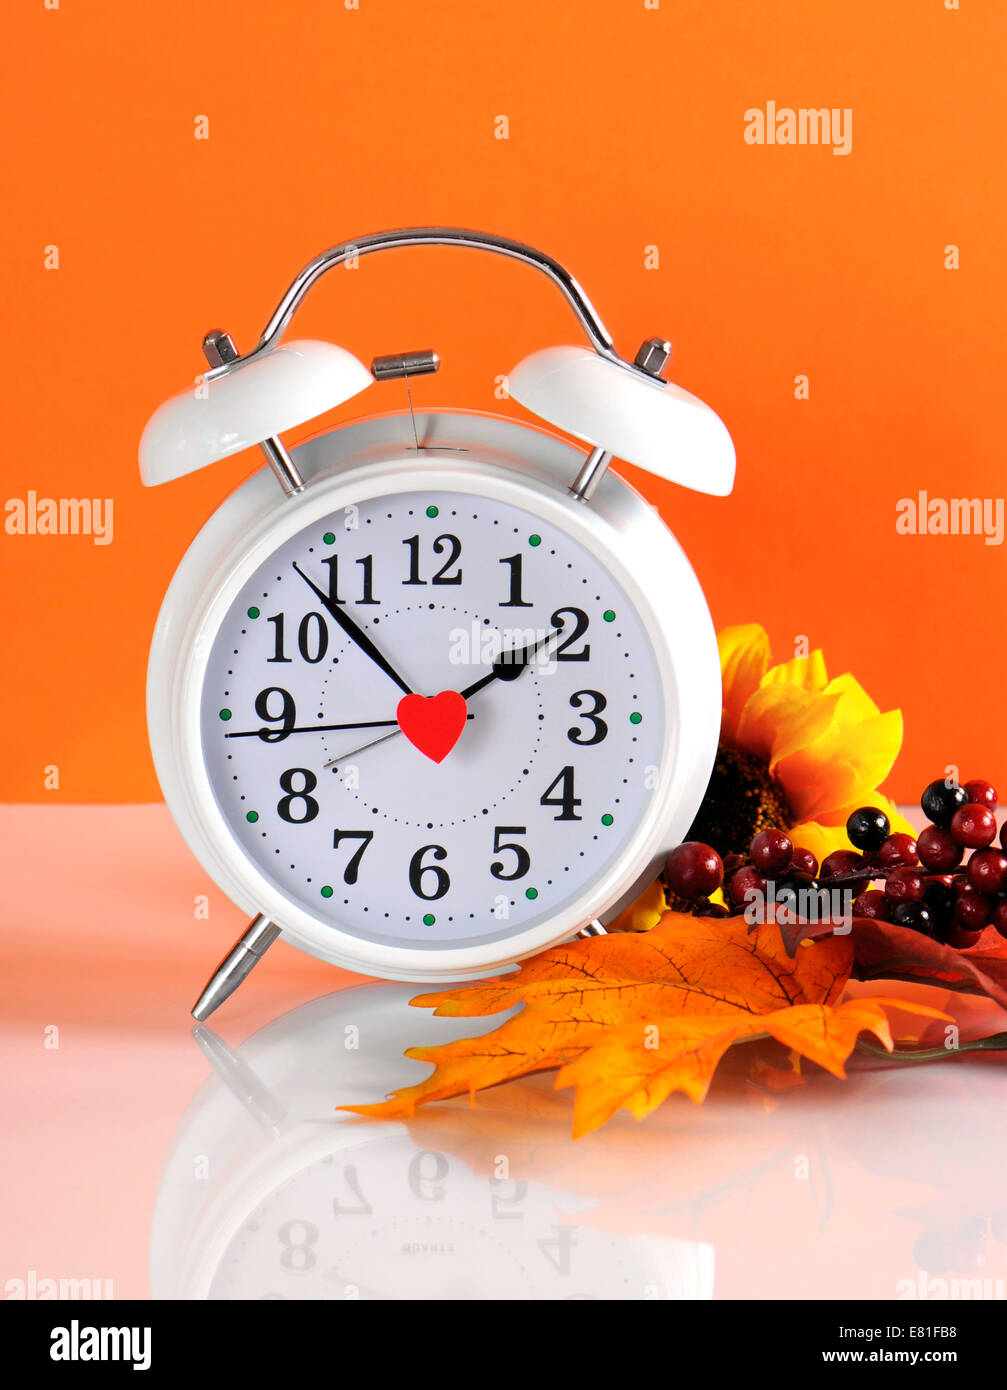 L'heure d'été se termine en automne avec le concept de l'horloge sur fond orange. Banque D'Images